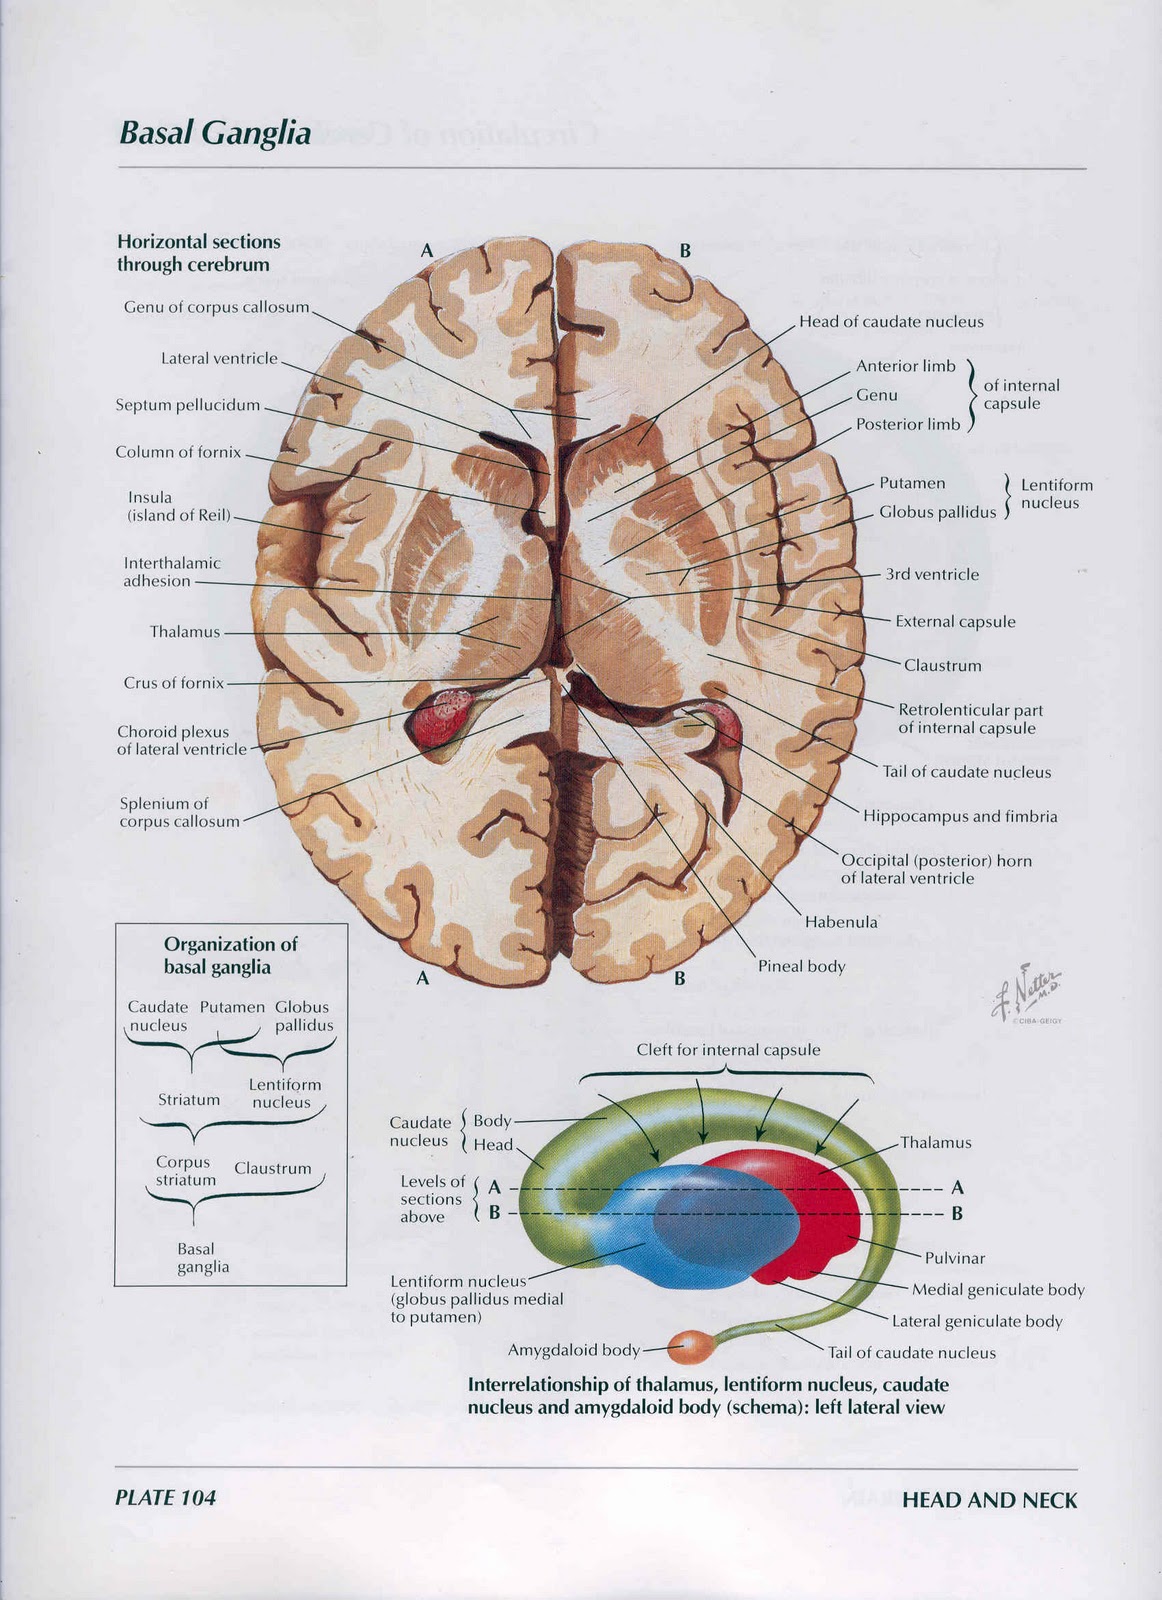 Подкорковые ядра полушарий. Базальные ядра головного мозга анатомия. Горизонтальный срез мозга базальные ядра. Горизонтальный разрез головного мозга базальные ядра. Подкорковые ядра (чечевицеобразное, скорлупа, бледный шар).